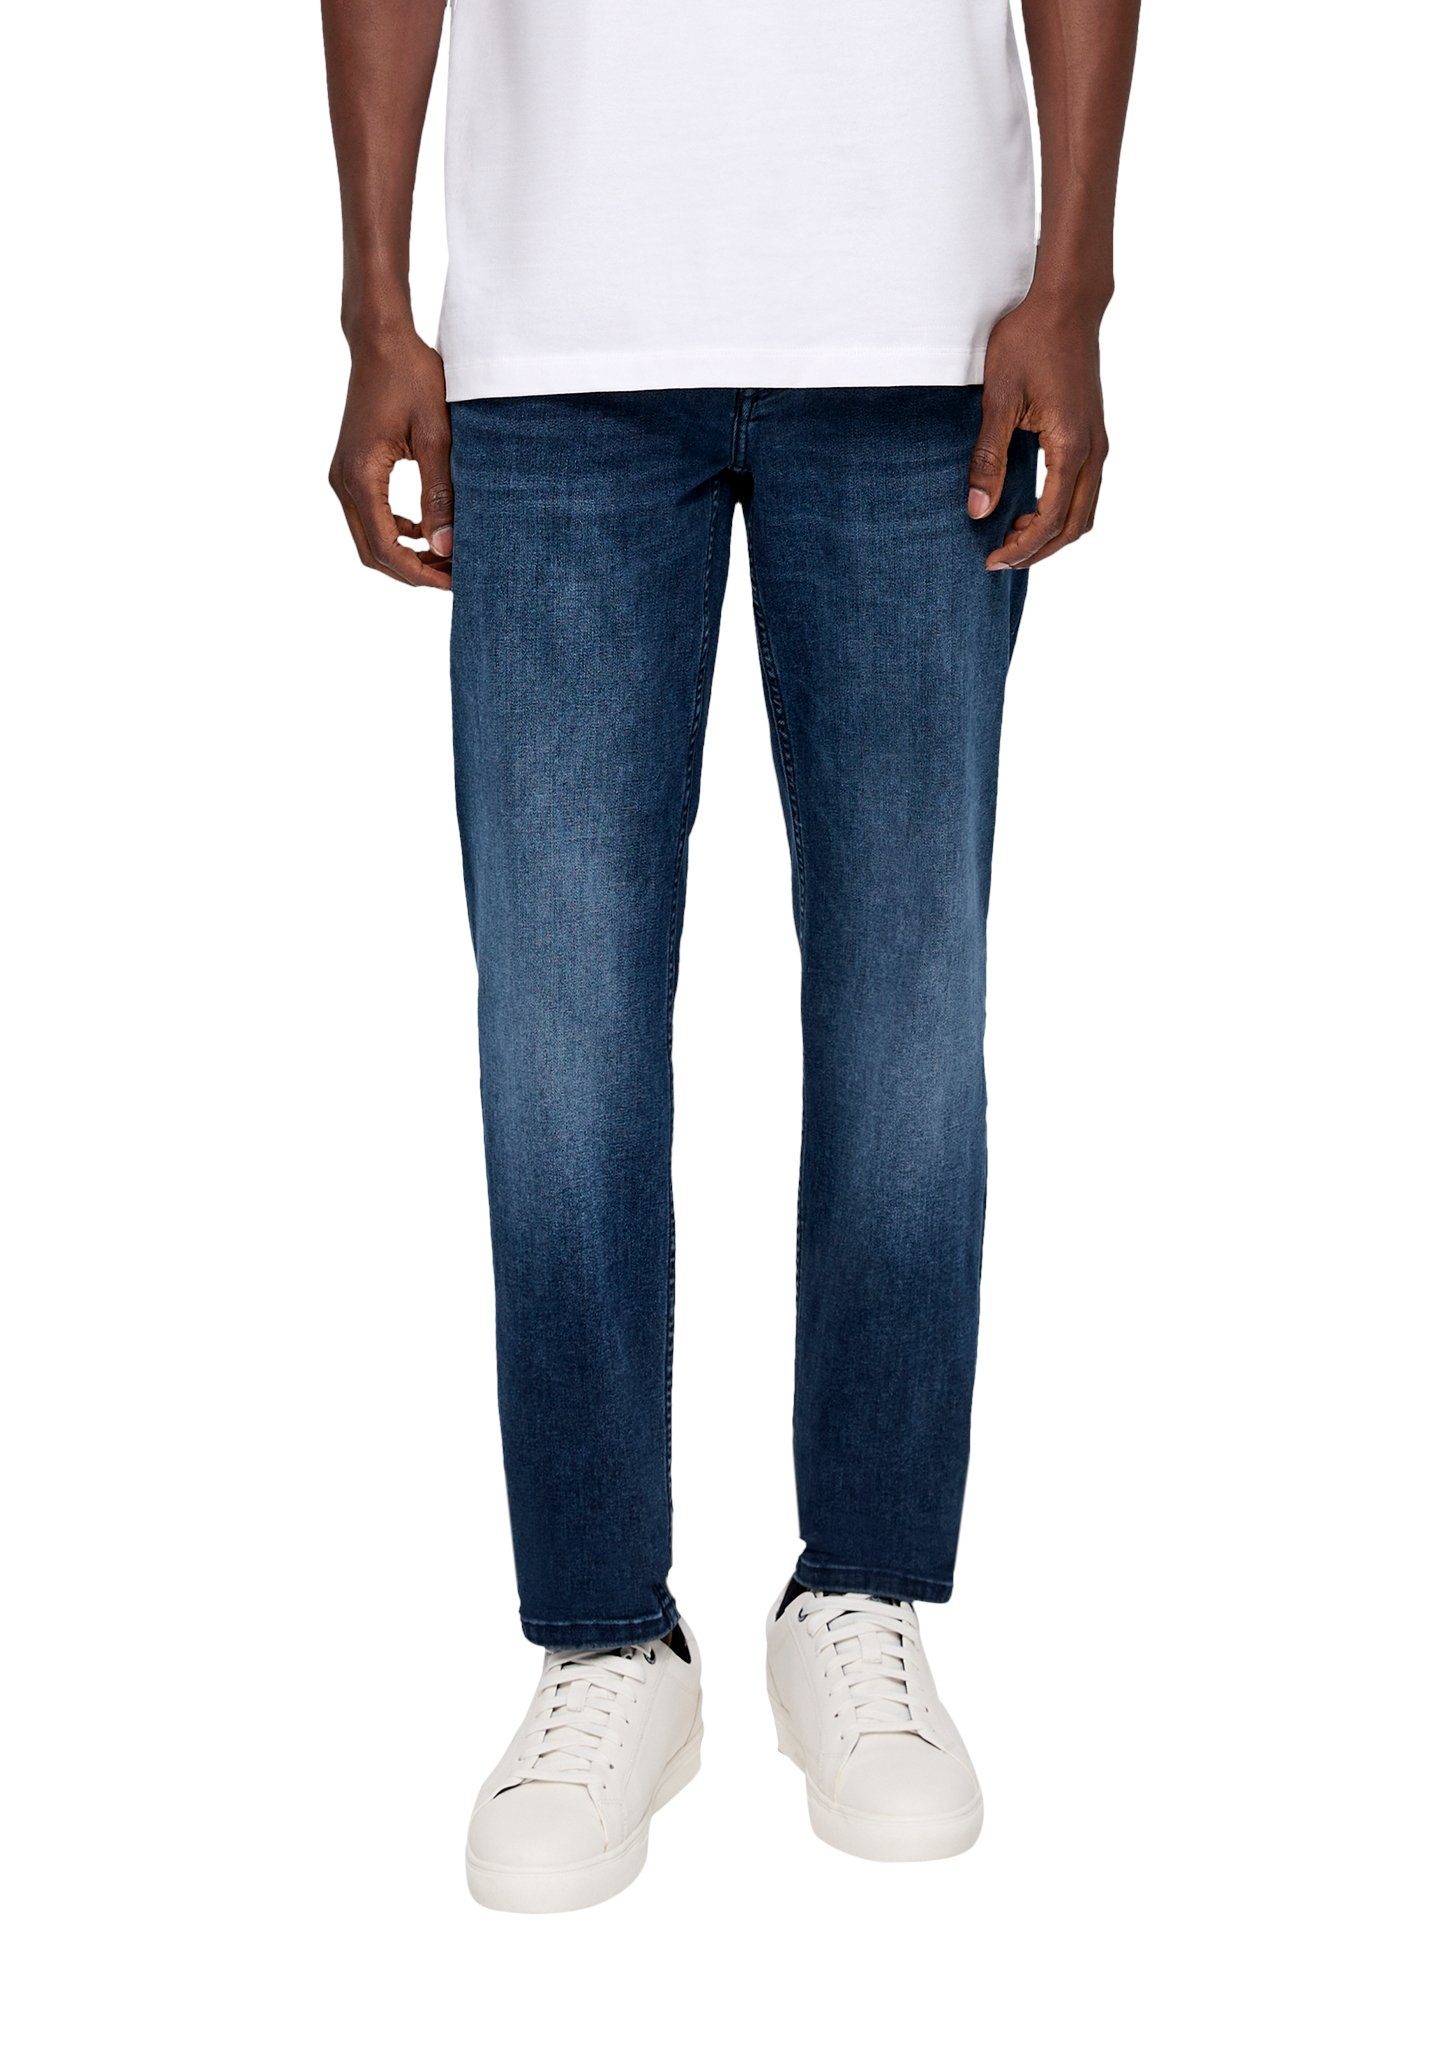 blue34 Bequeme geradem s.Oliver mit Beinverlauf Jeans